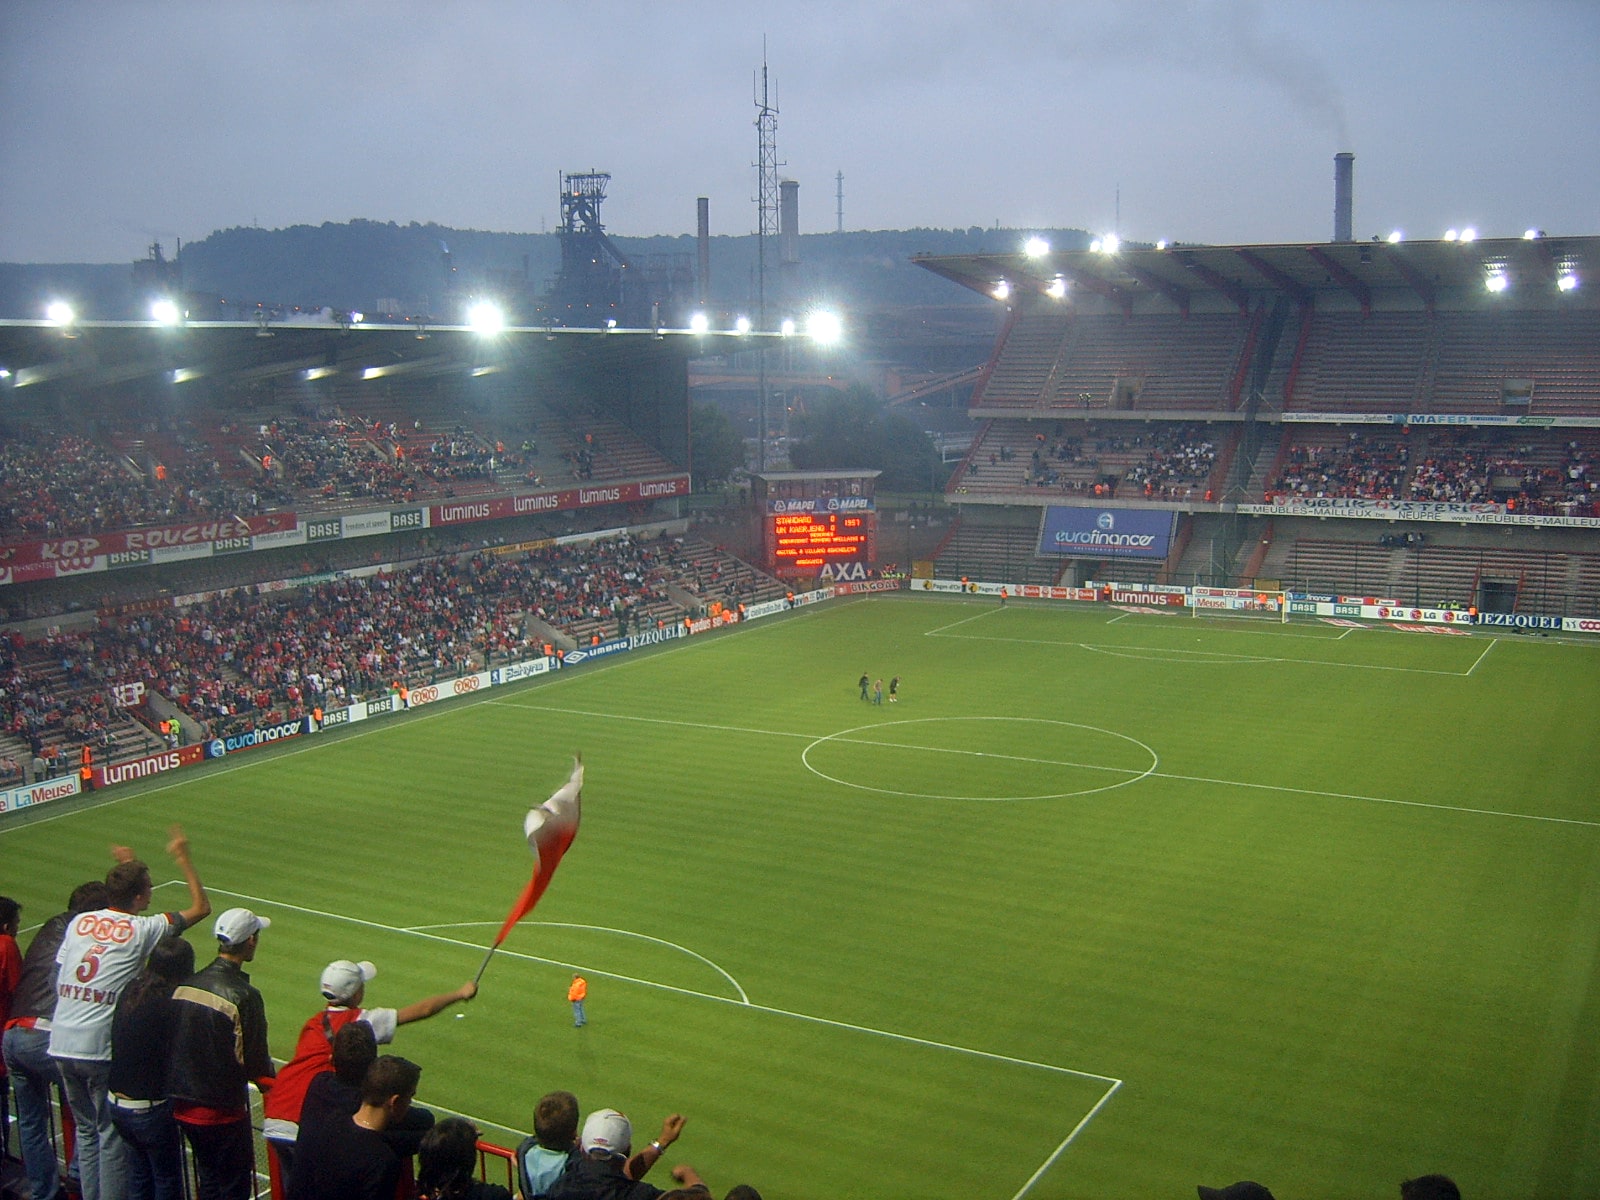 สนามแข่ง : Stade Maurice Dufrasne